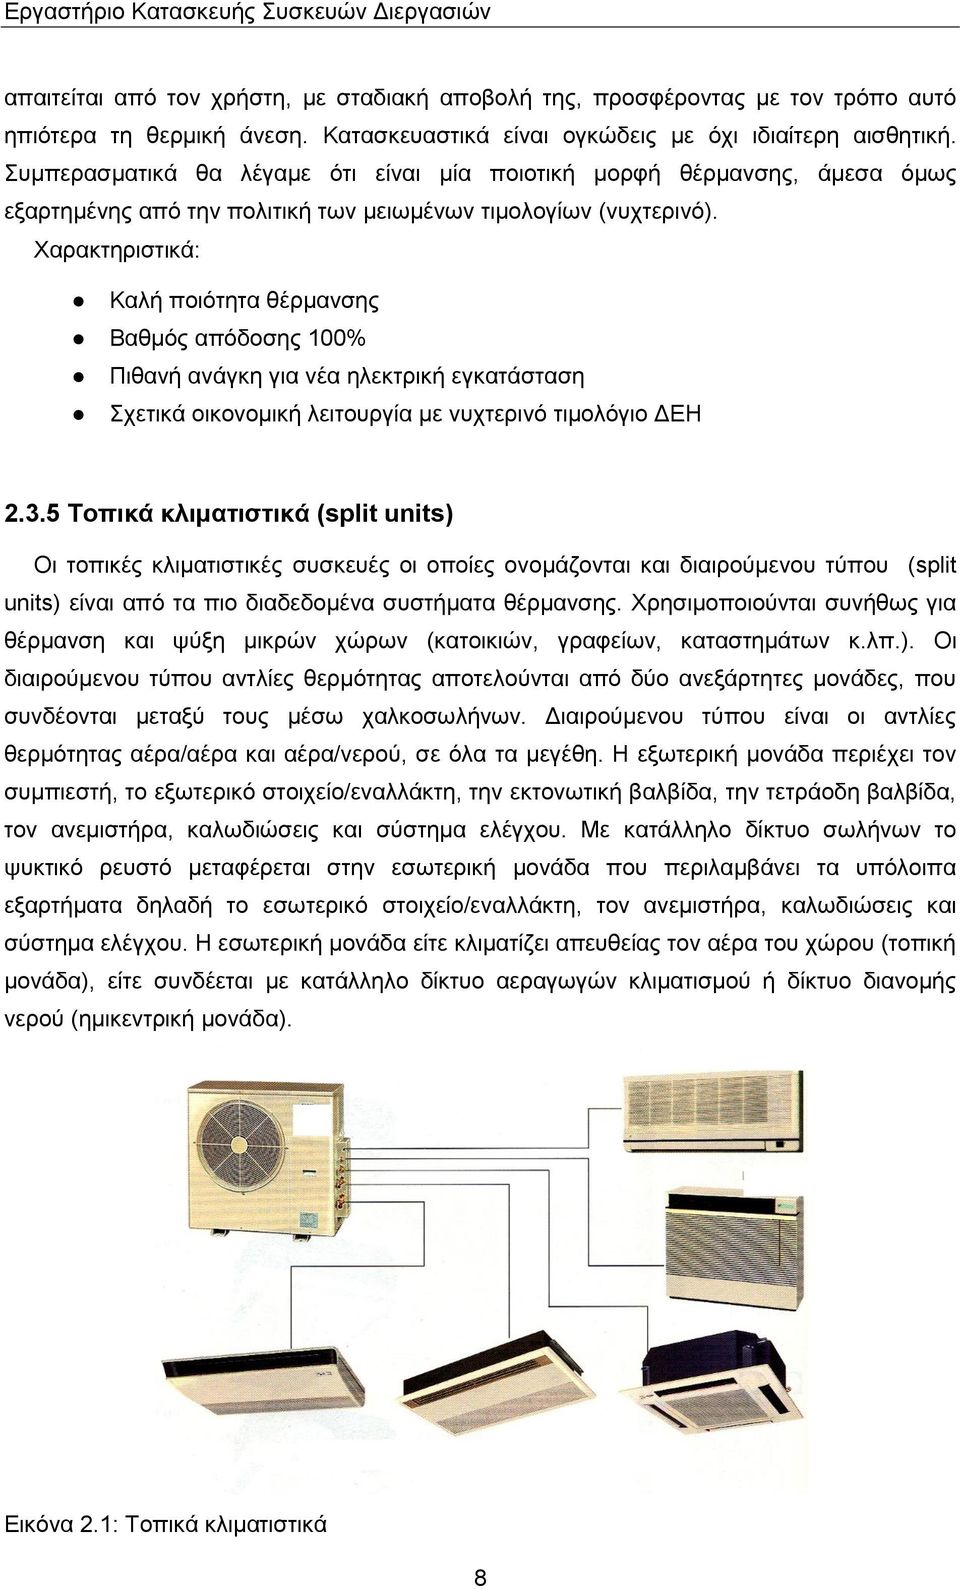 Χαρακτηριστικά: Καλή ποιότητα θέρμανσης Βαθμός απόδοσης 100% Πιθανή ανάγκη για νέα ηλεκτρική εγκατάσταση Σχετικά οικονομική λειτουργία με νυχτερινό τιμολόγιο ΔΕΗ 2.3.